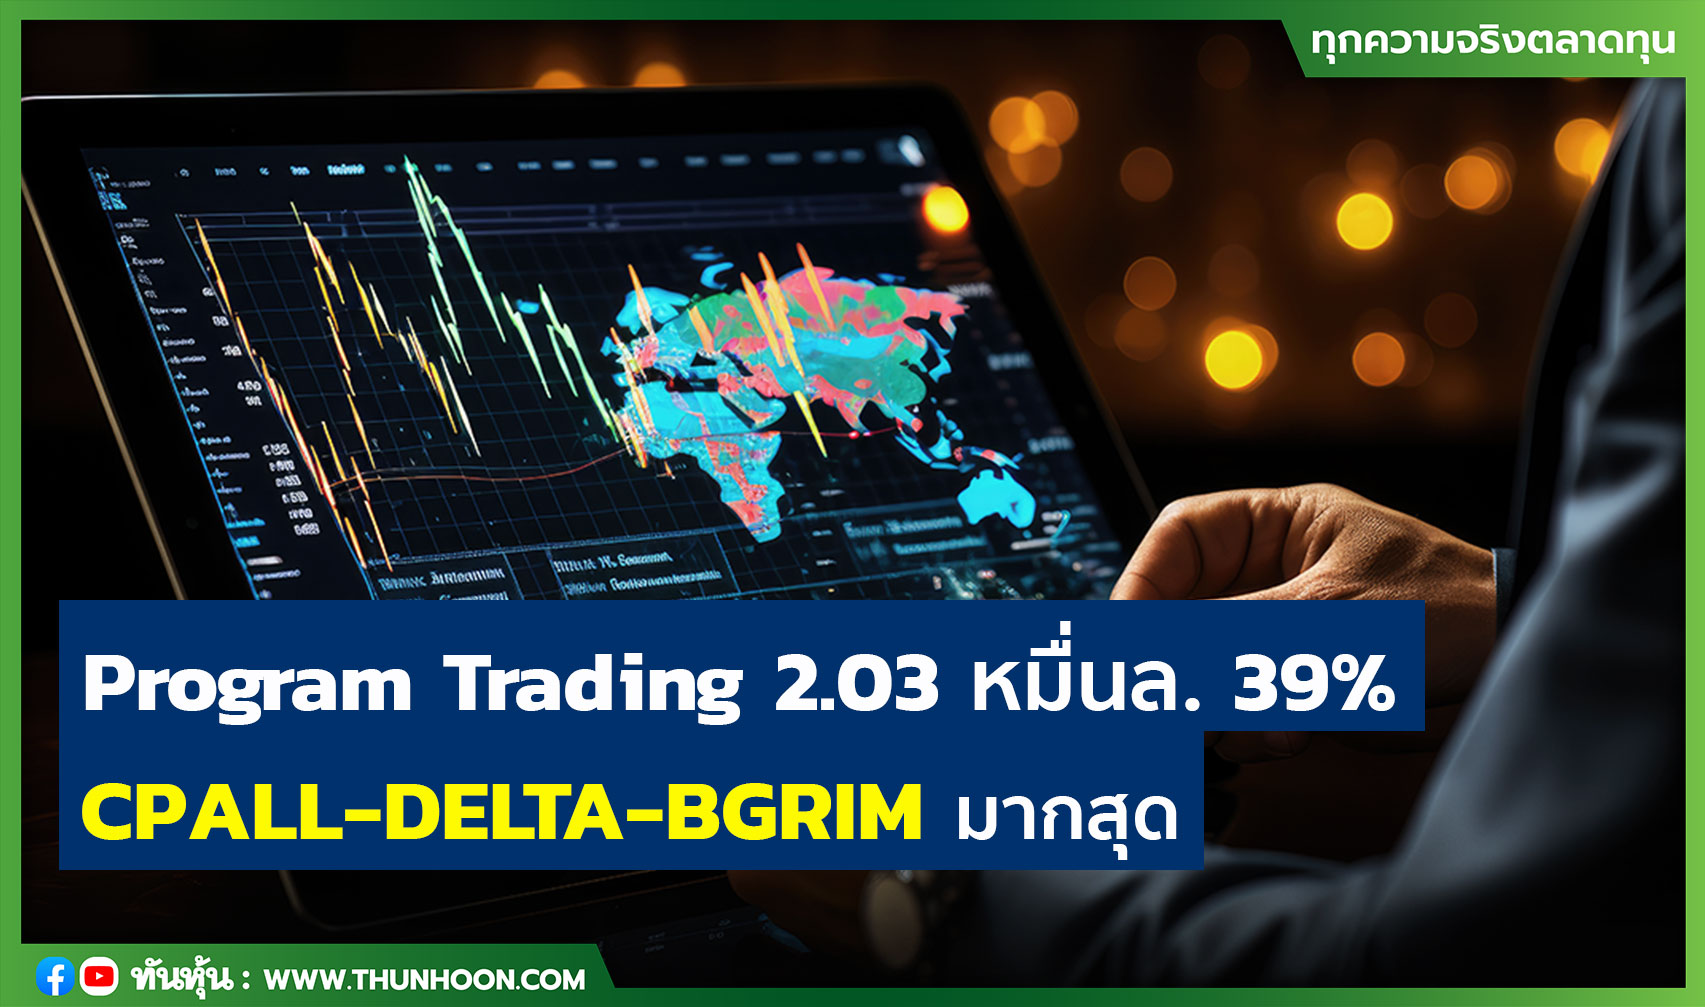 Program Trading 2.03 หมื่นล้าน 39% CPALL-DELTA-BGRIM มากสุด